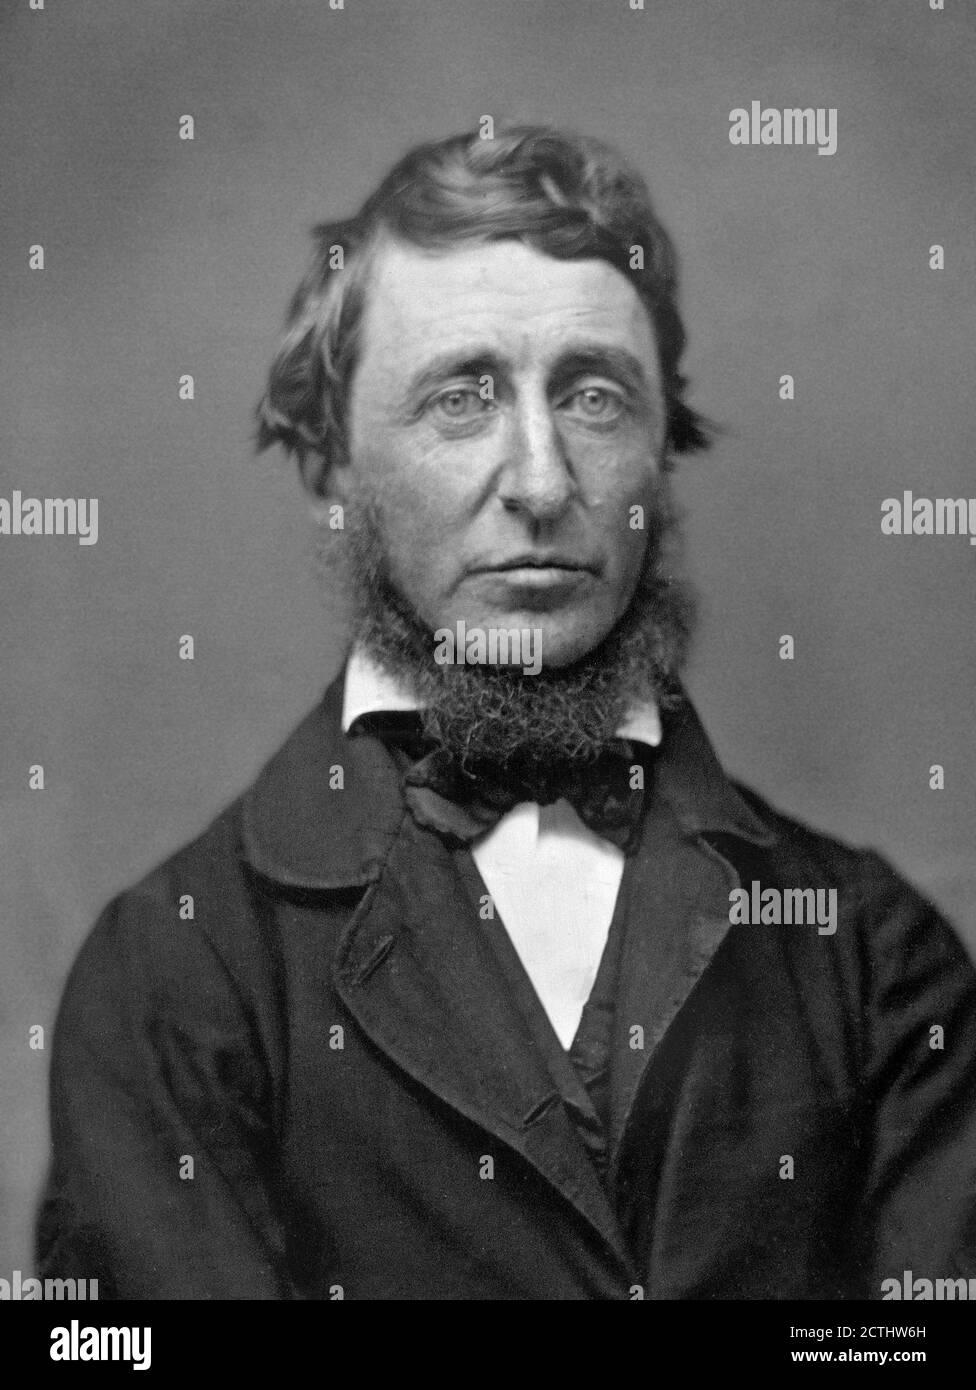 Henry Thoreau. Portrait de l'essayiste, poète et philosophe américain Henry David Thoreau (1817-1862) par Benjamin Dexter Maxham, 1856 Banque D'Images